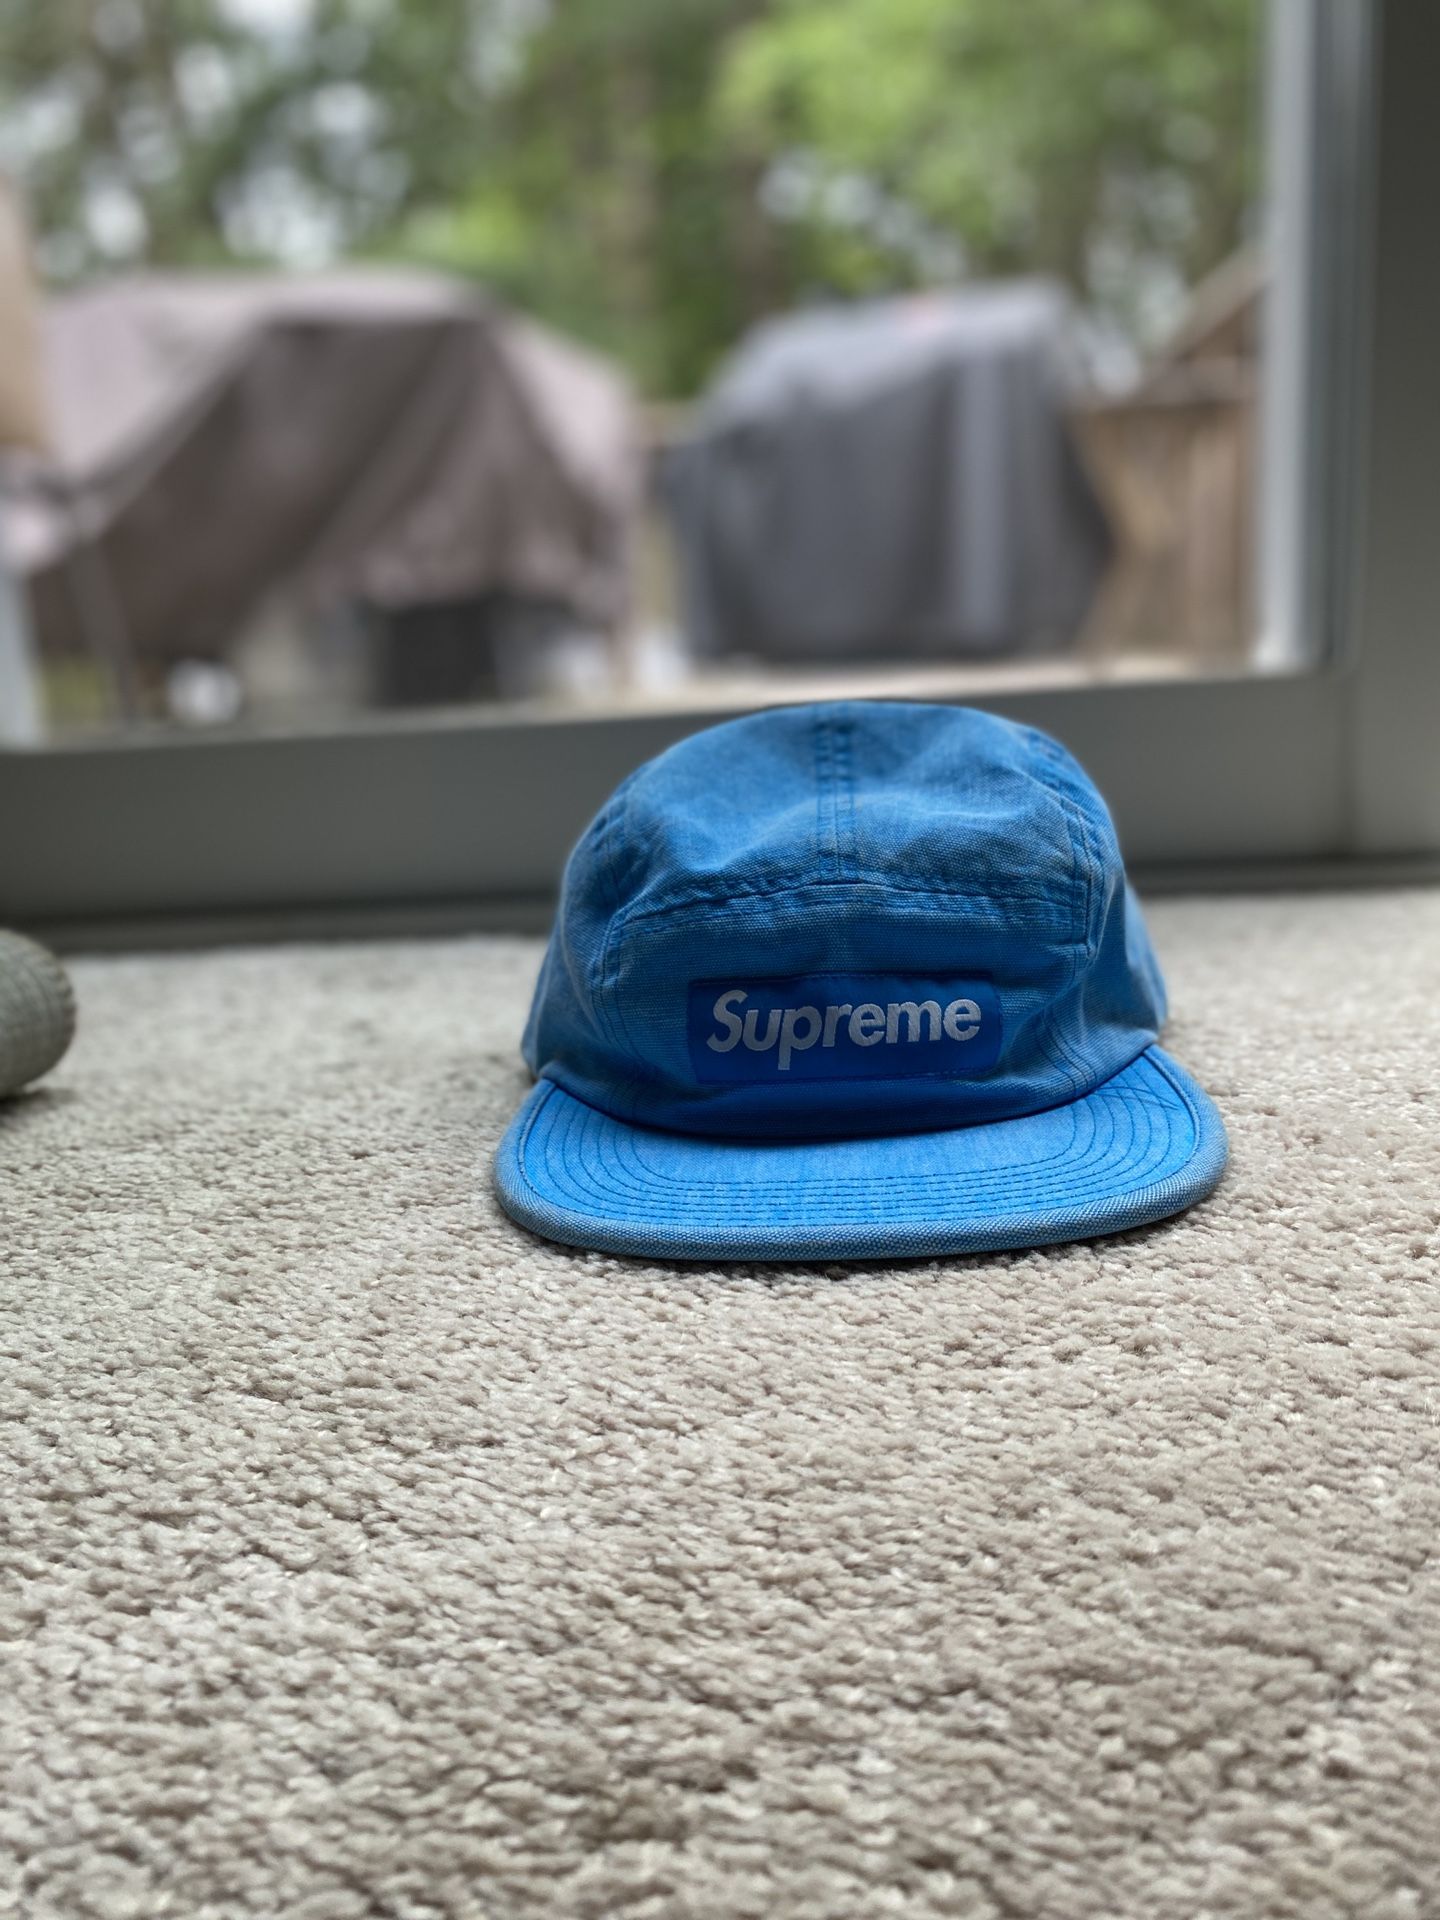 Blue Supreme hat